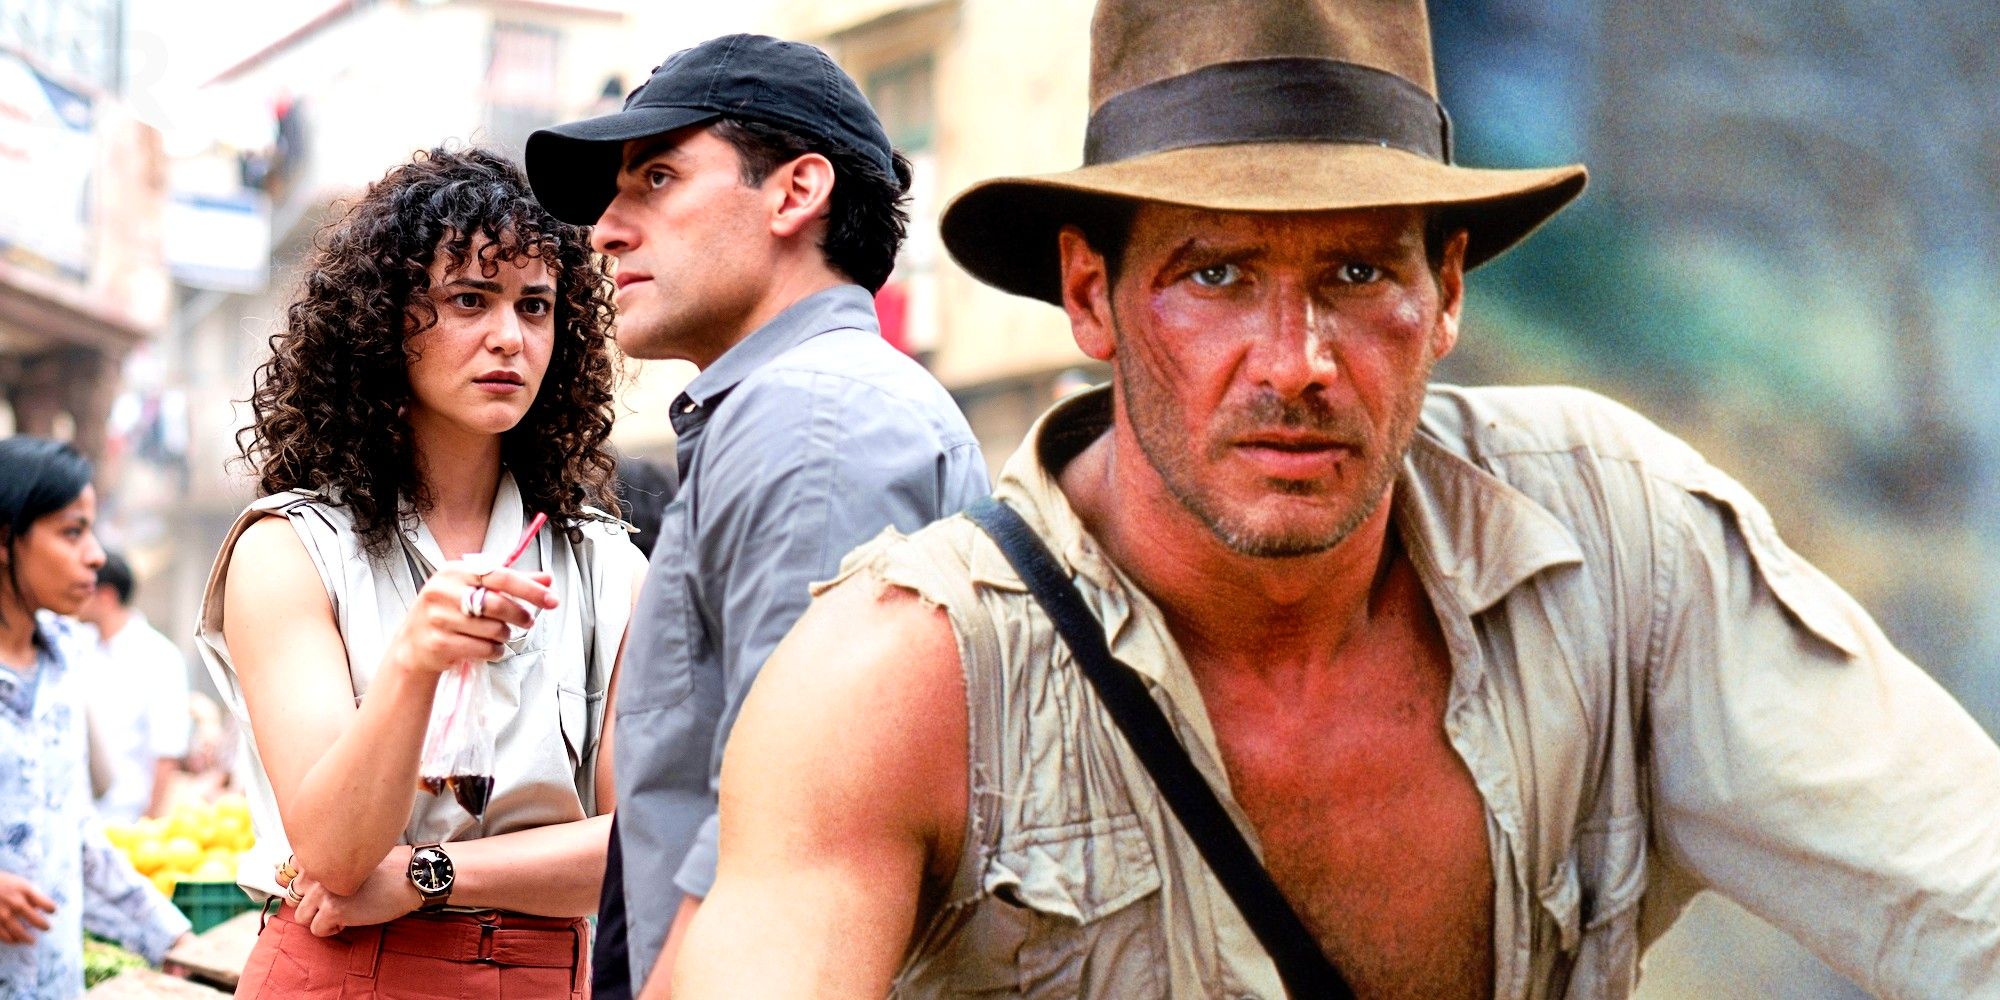 Marvel acaba de criticar sutilmente las heroicidades de Indiana Jones